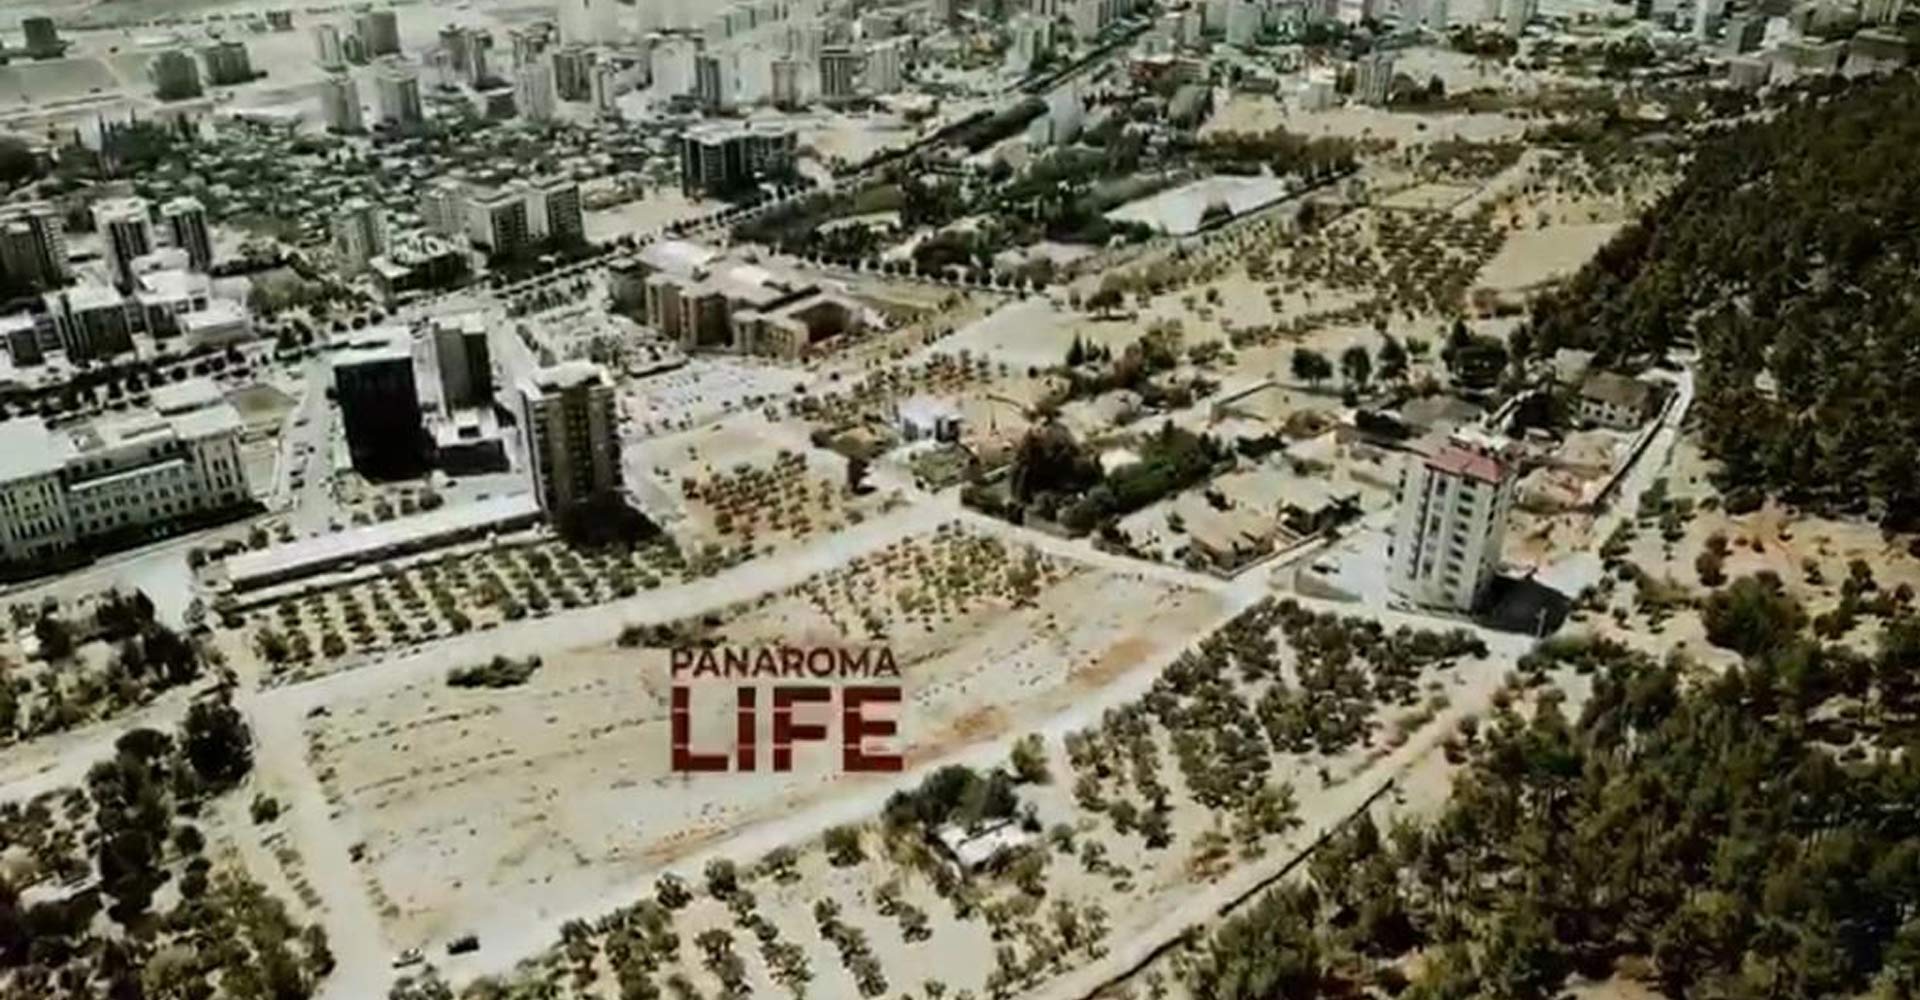 Panorama Life